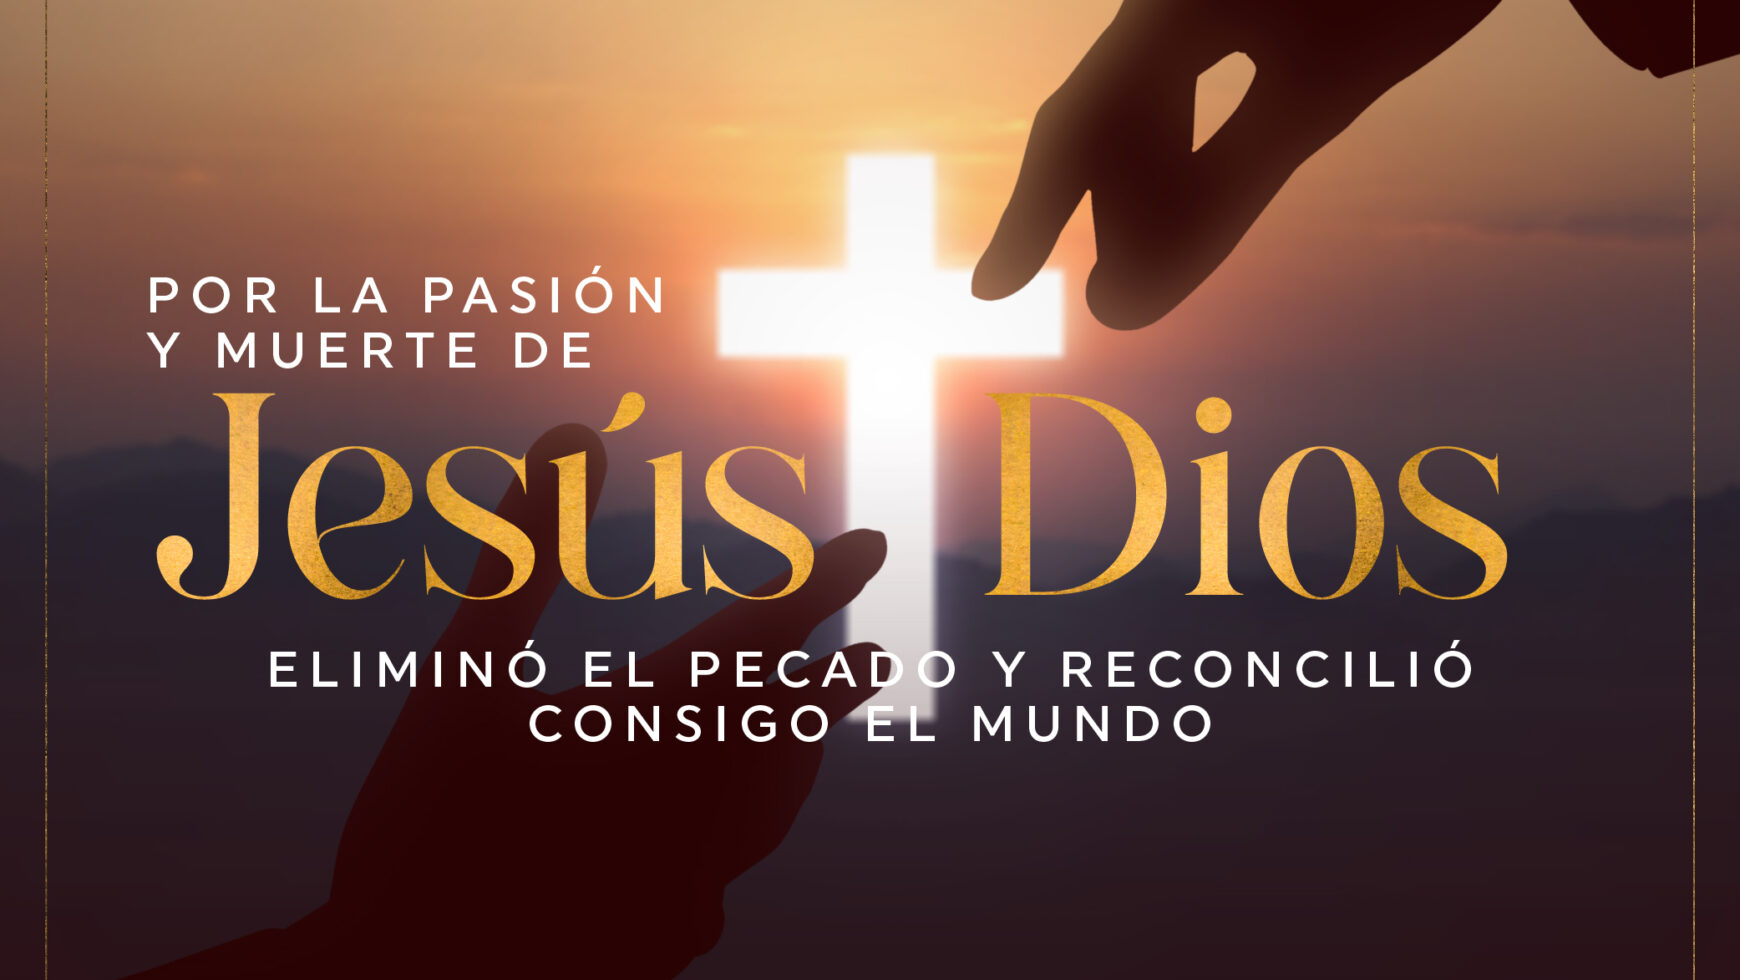 Por la pasión y muerte de Jesús Dios eliminó el pecado y reconcilió consigo al mundo